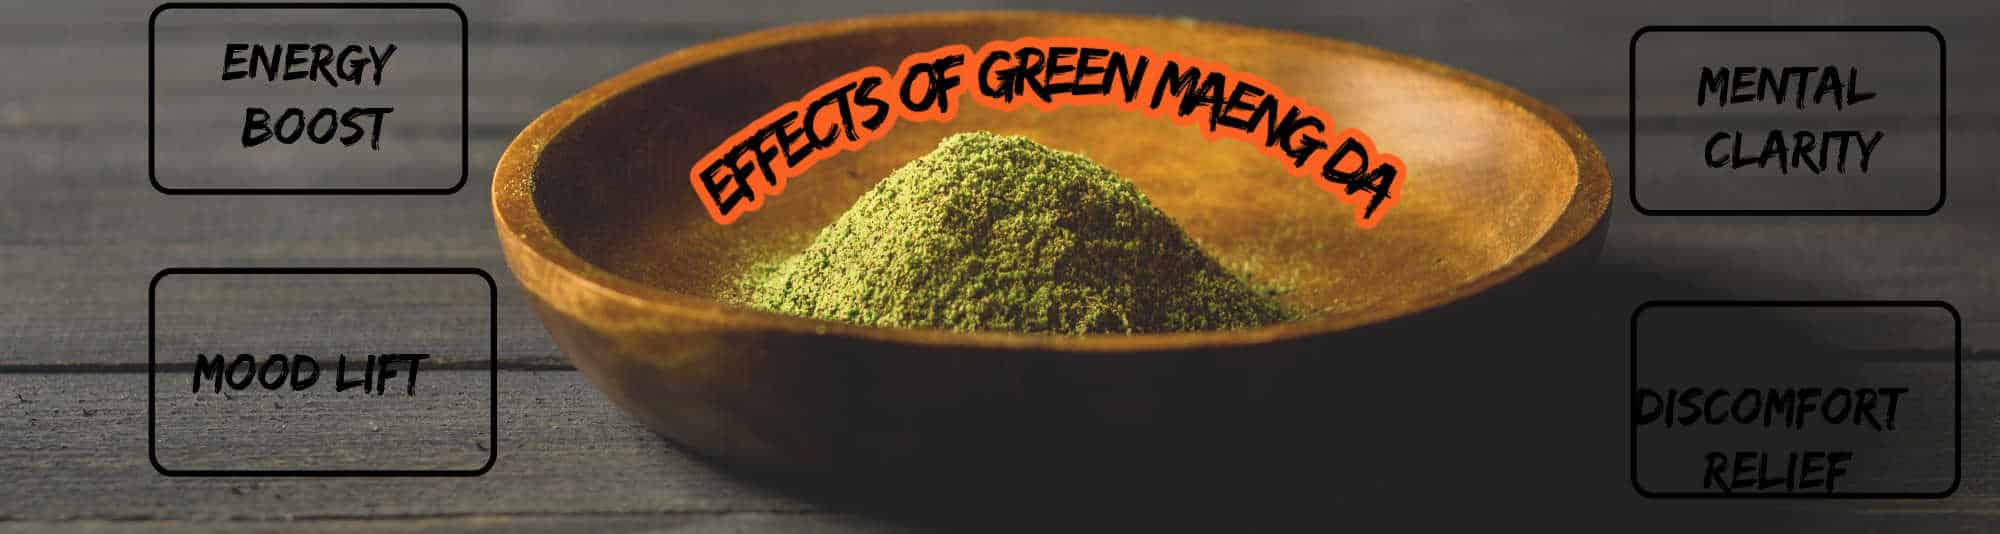 image of green maeng da effects